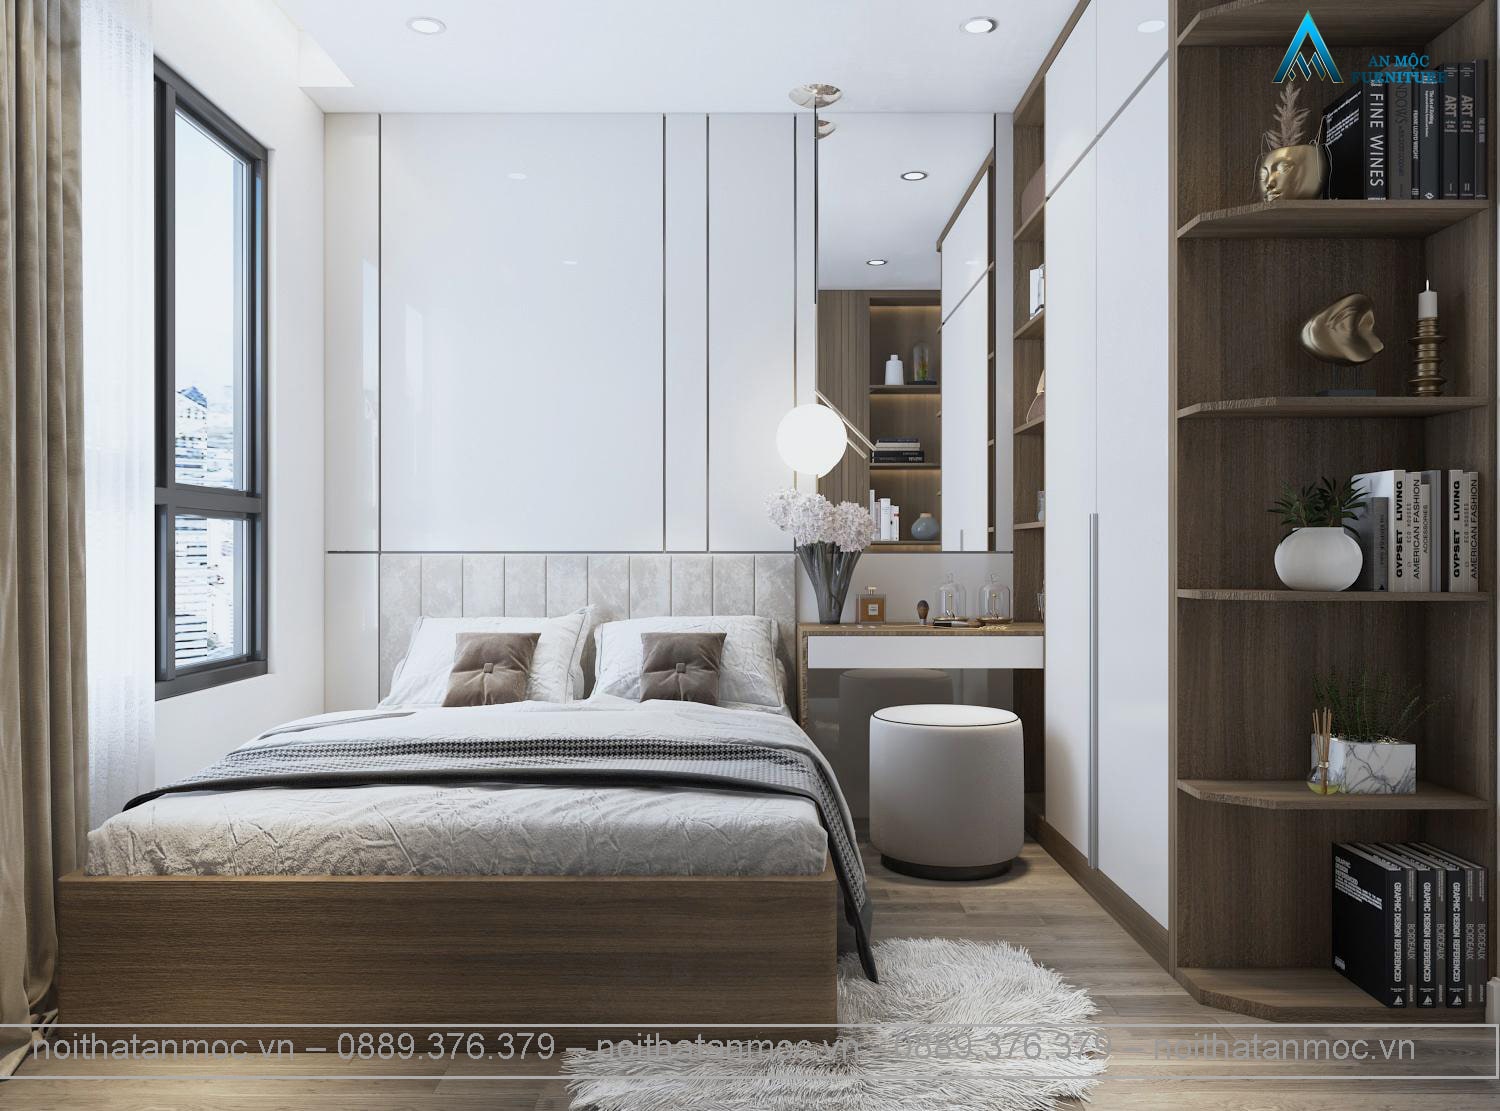 99+ Mẫu thiết kế nội thất phòng ngủ hiện đại từ 10 - 25m2